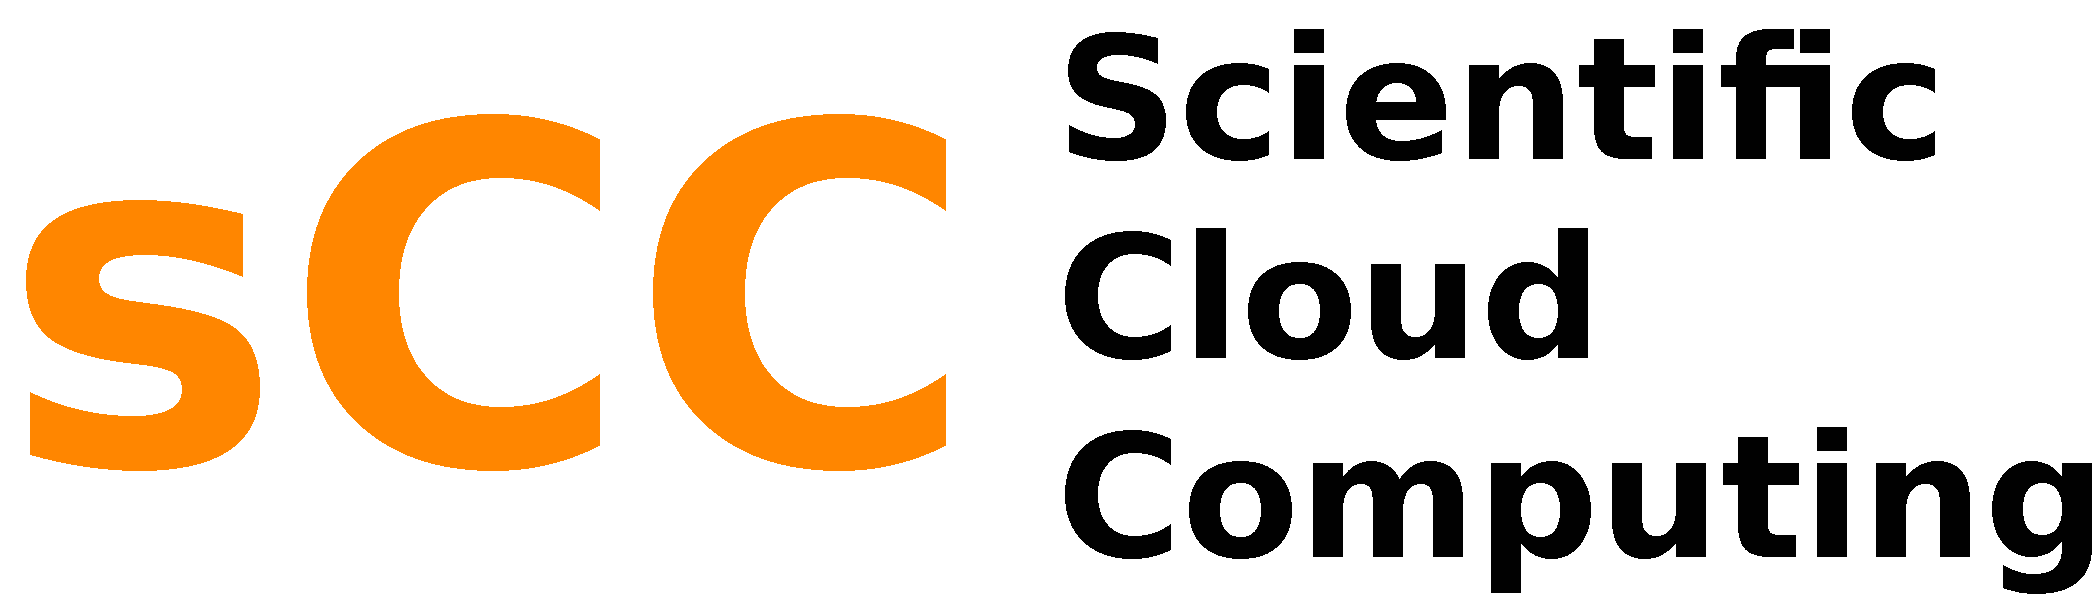 sCC - Scientific Cloud Computing logo